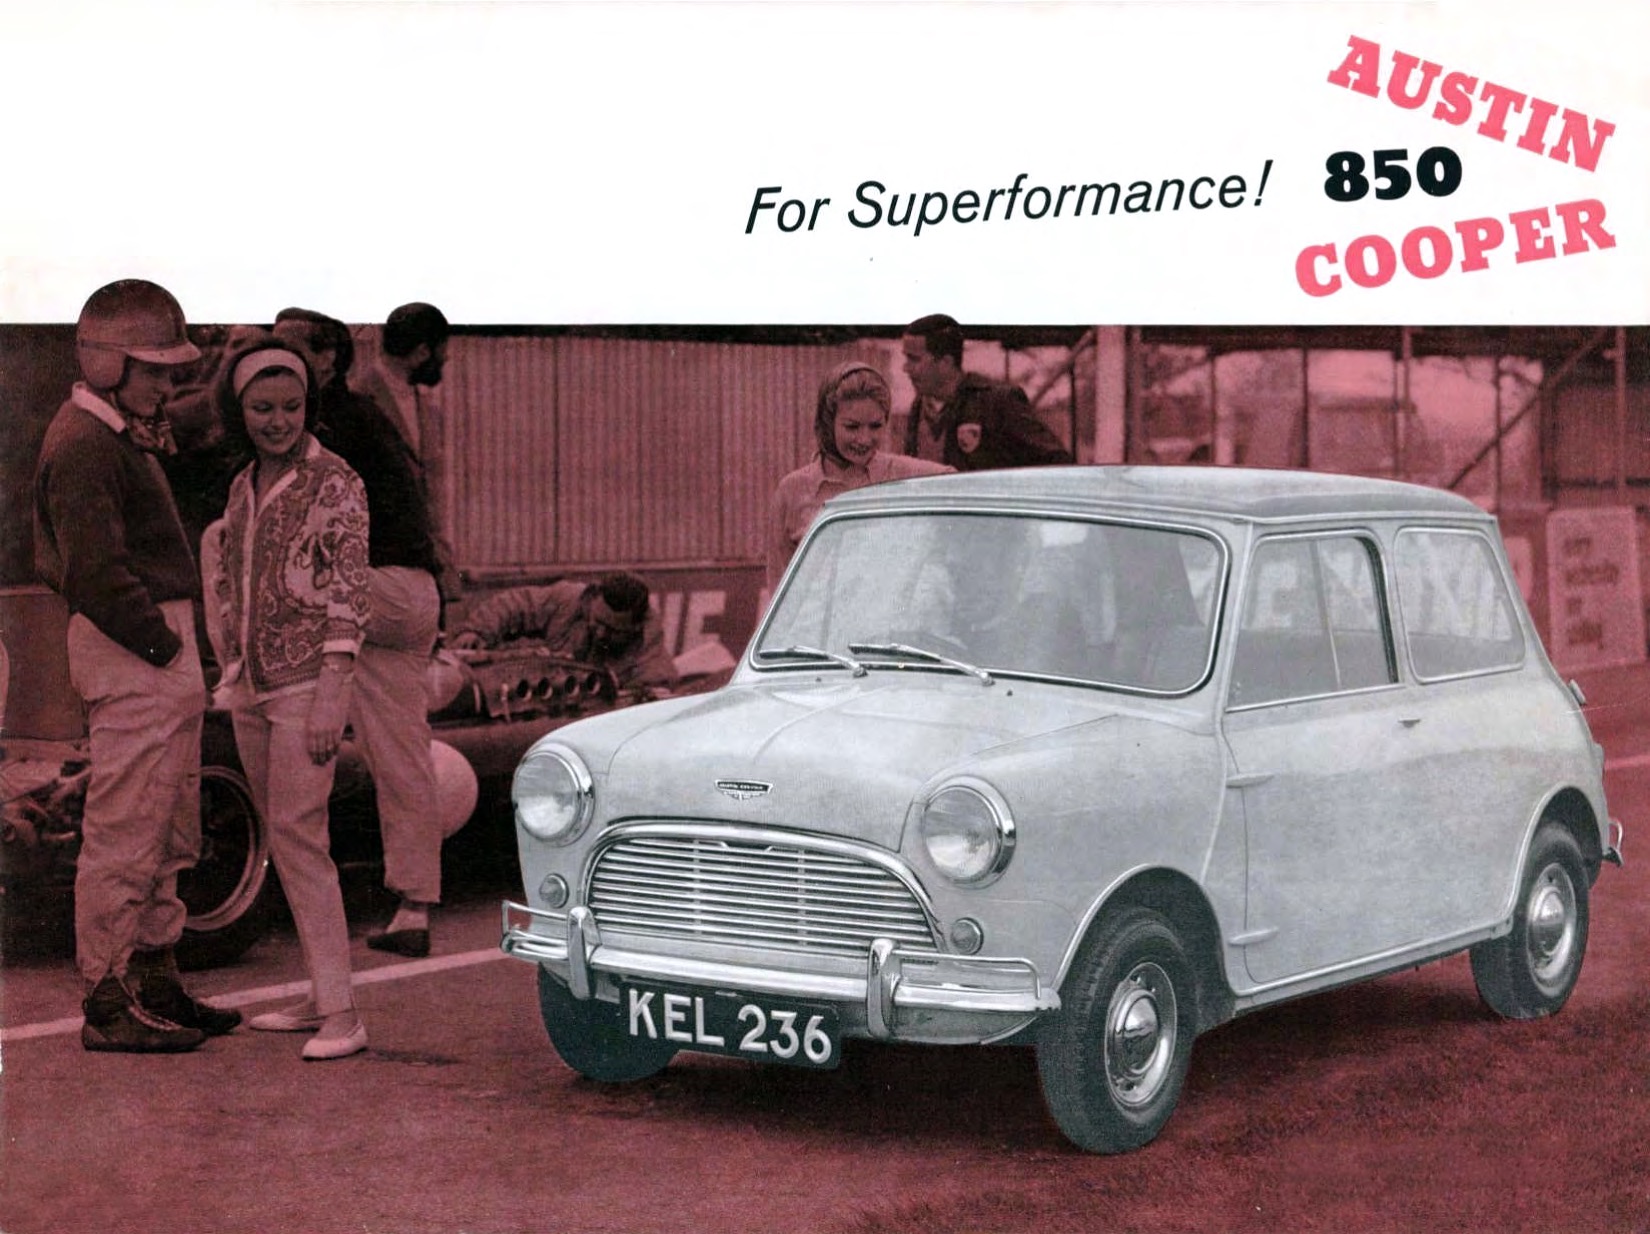 1960 Austin Cooper 850